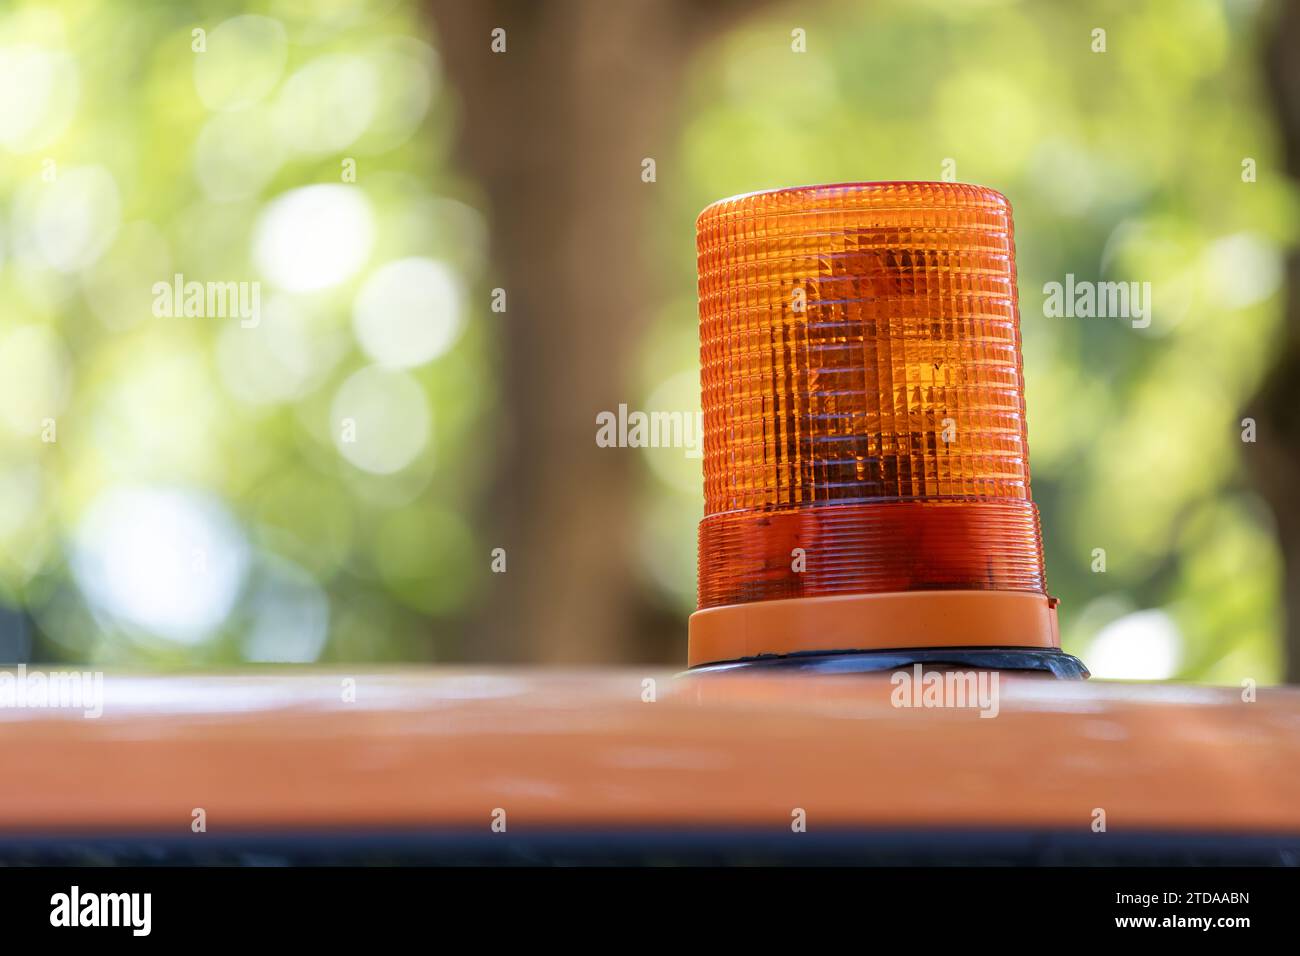 Erhöhte Sicherheit: Leuchtendes orangefarbenes Warnlicht auf dem Landschaftsgestaltungsfahrzeug inmitten eines unscharfen Hintergrunds Stockfoto